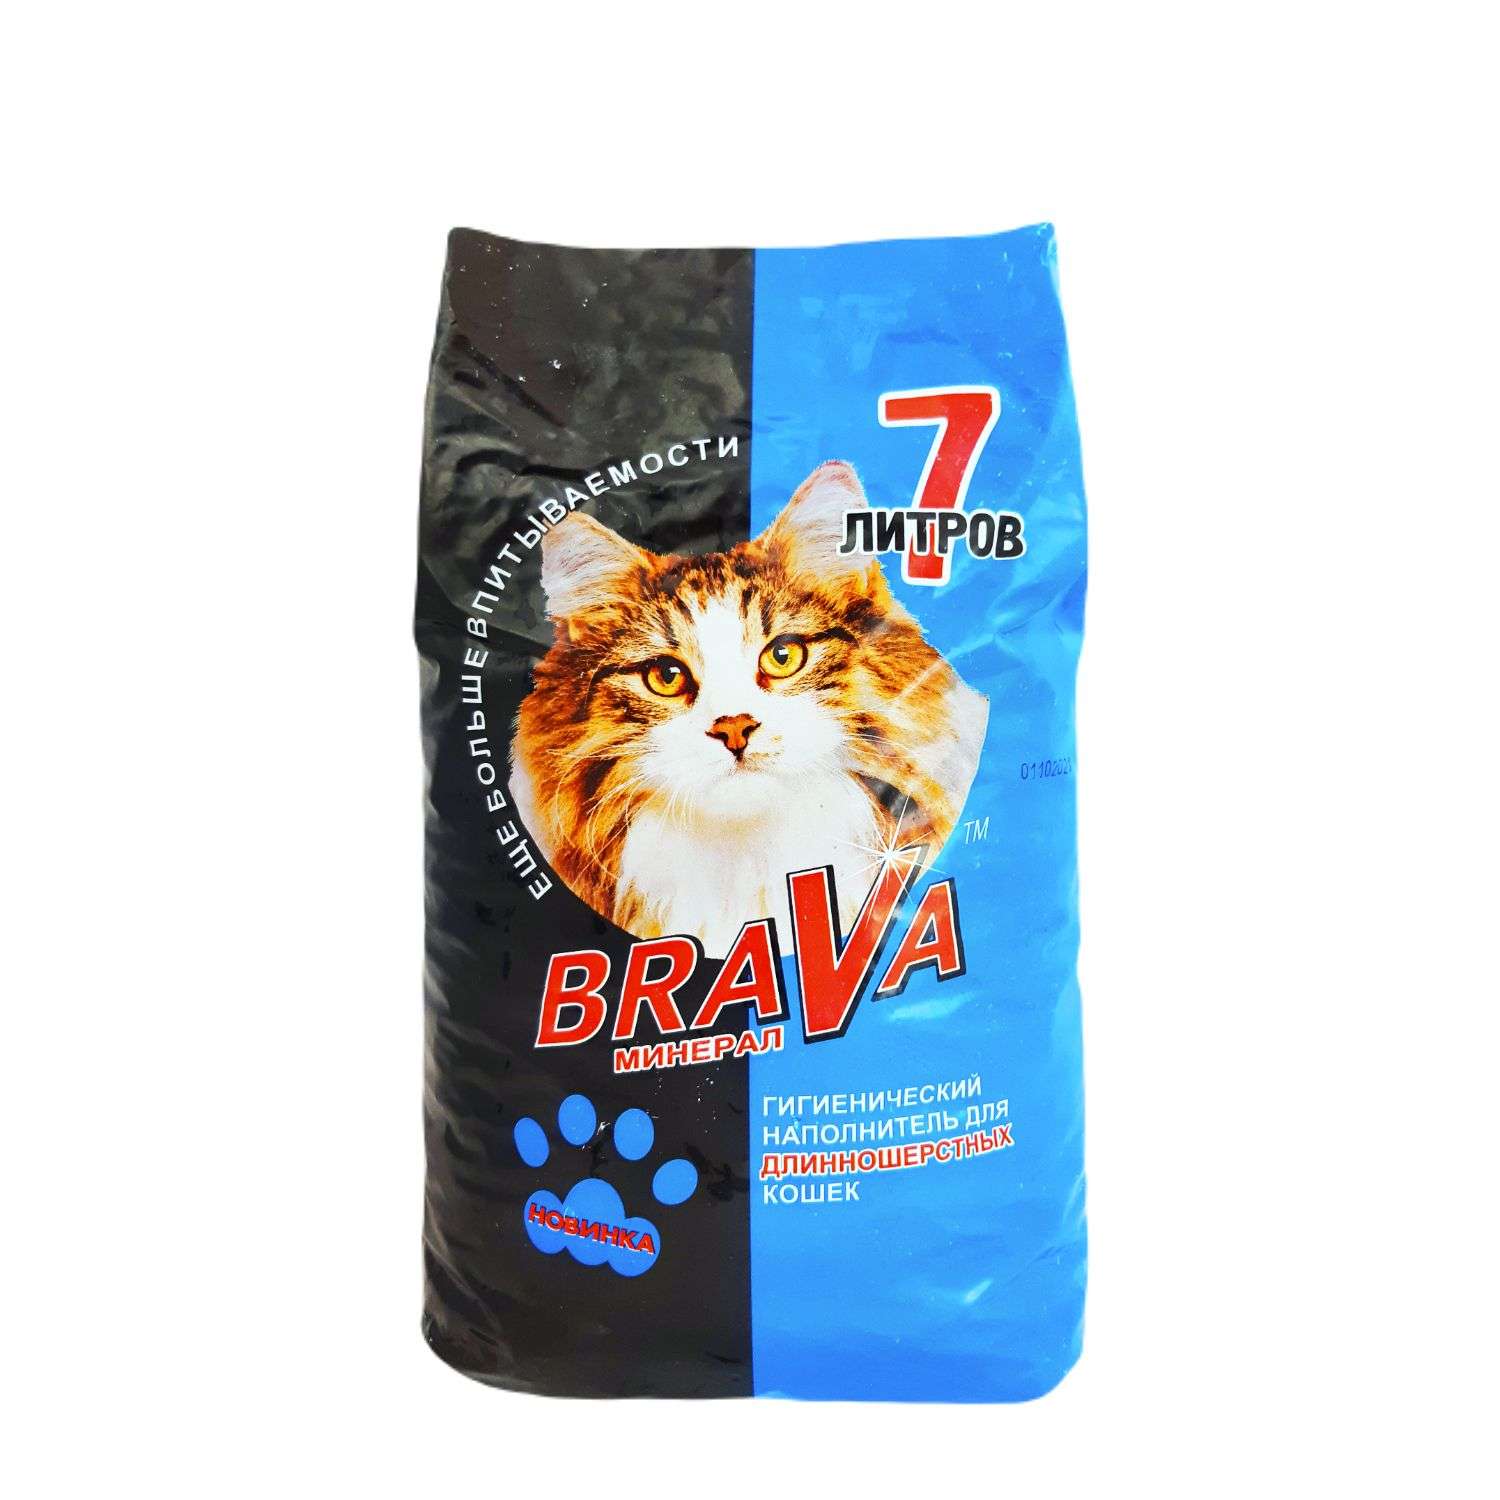 Наполнитель для кошек BraVa минеральный бентонитовый для длинношерстных кошек 7л - фото 1